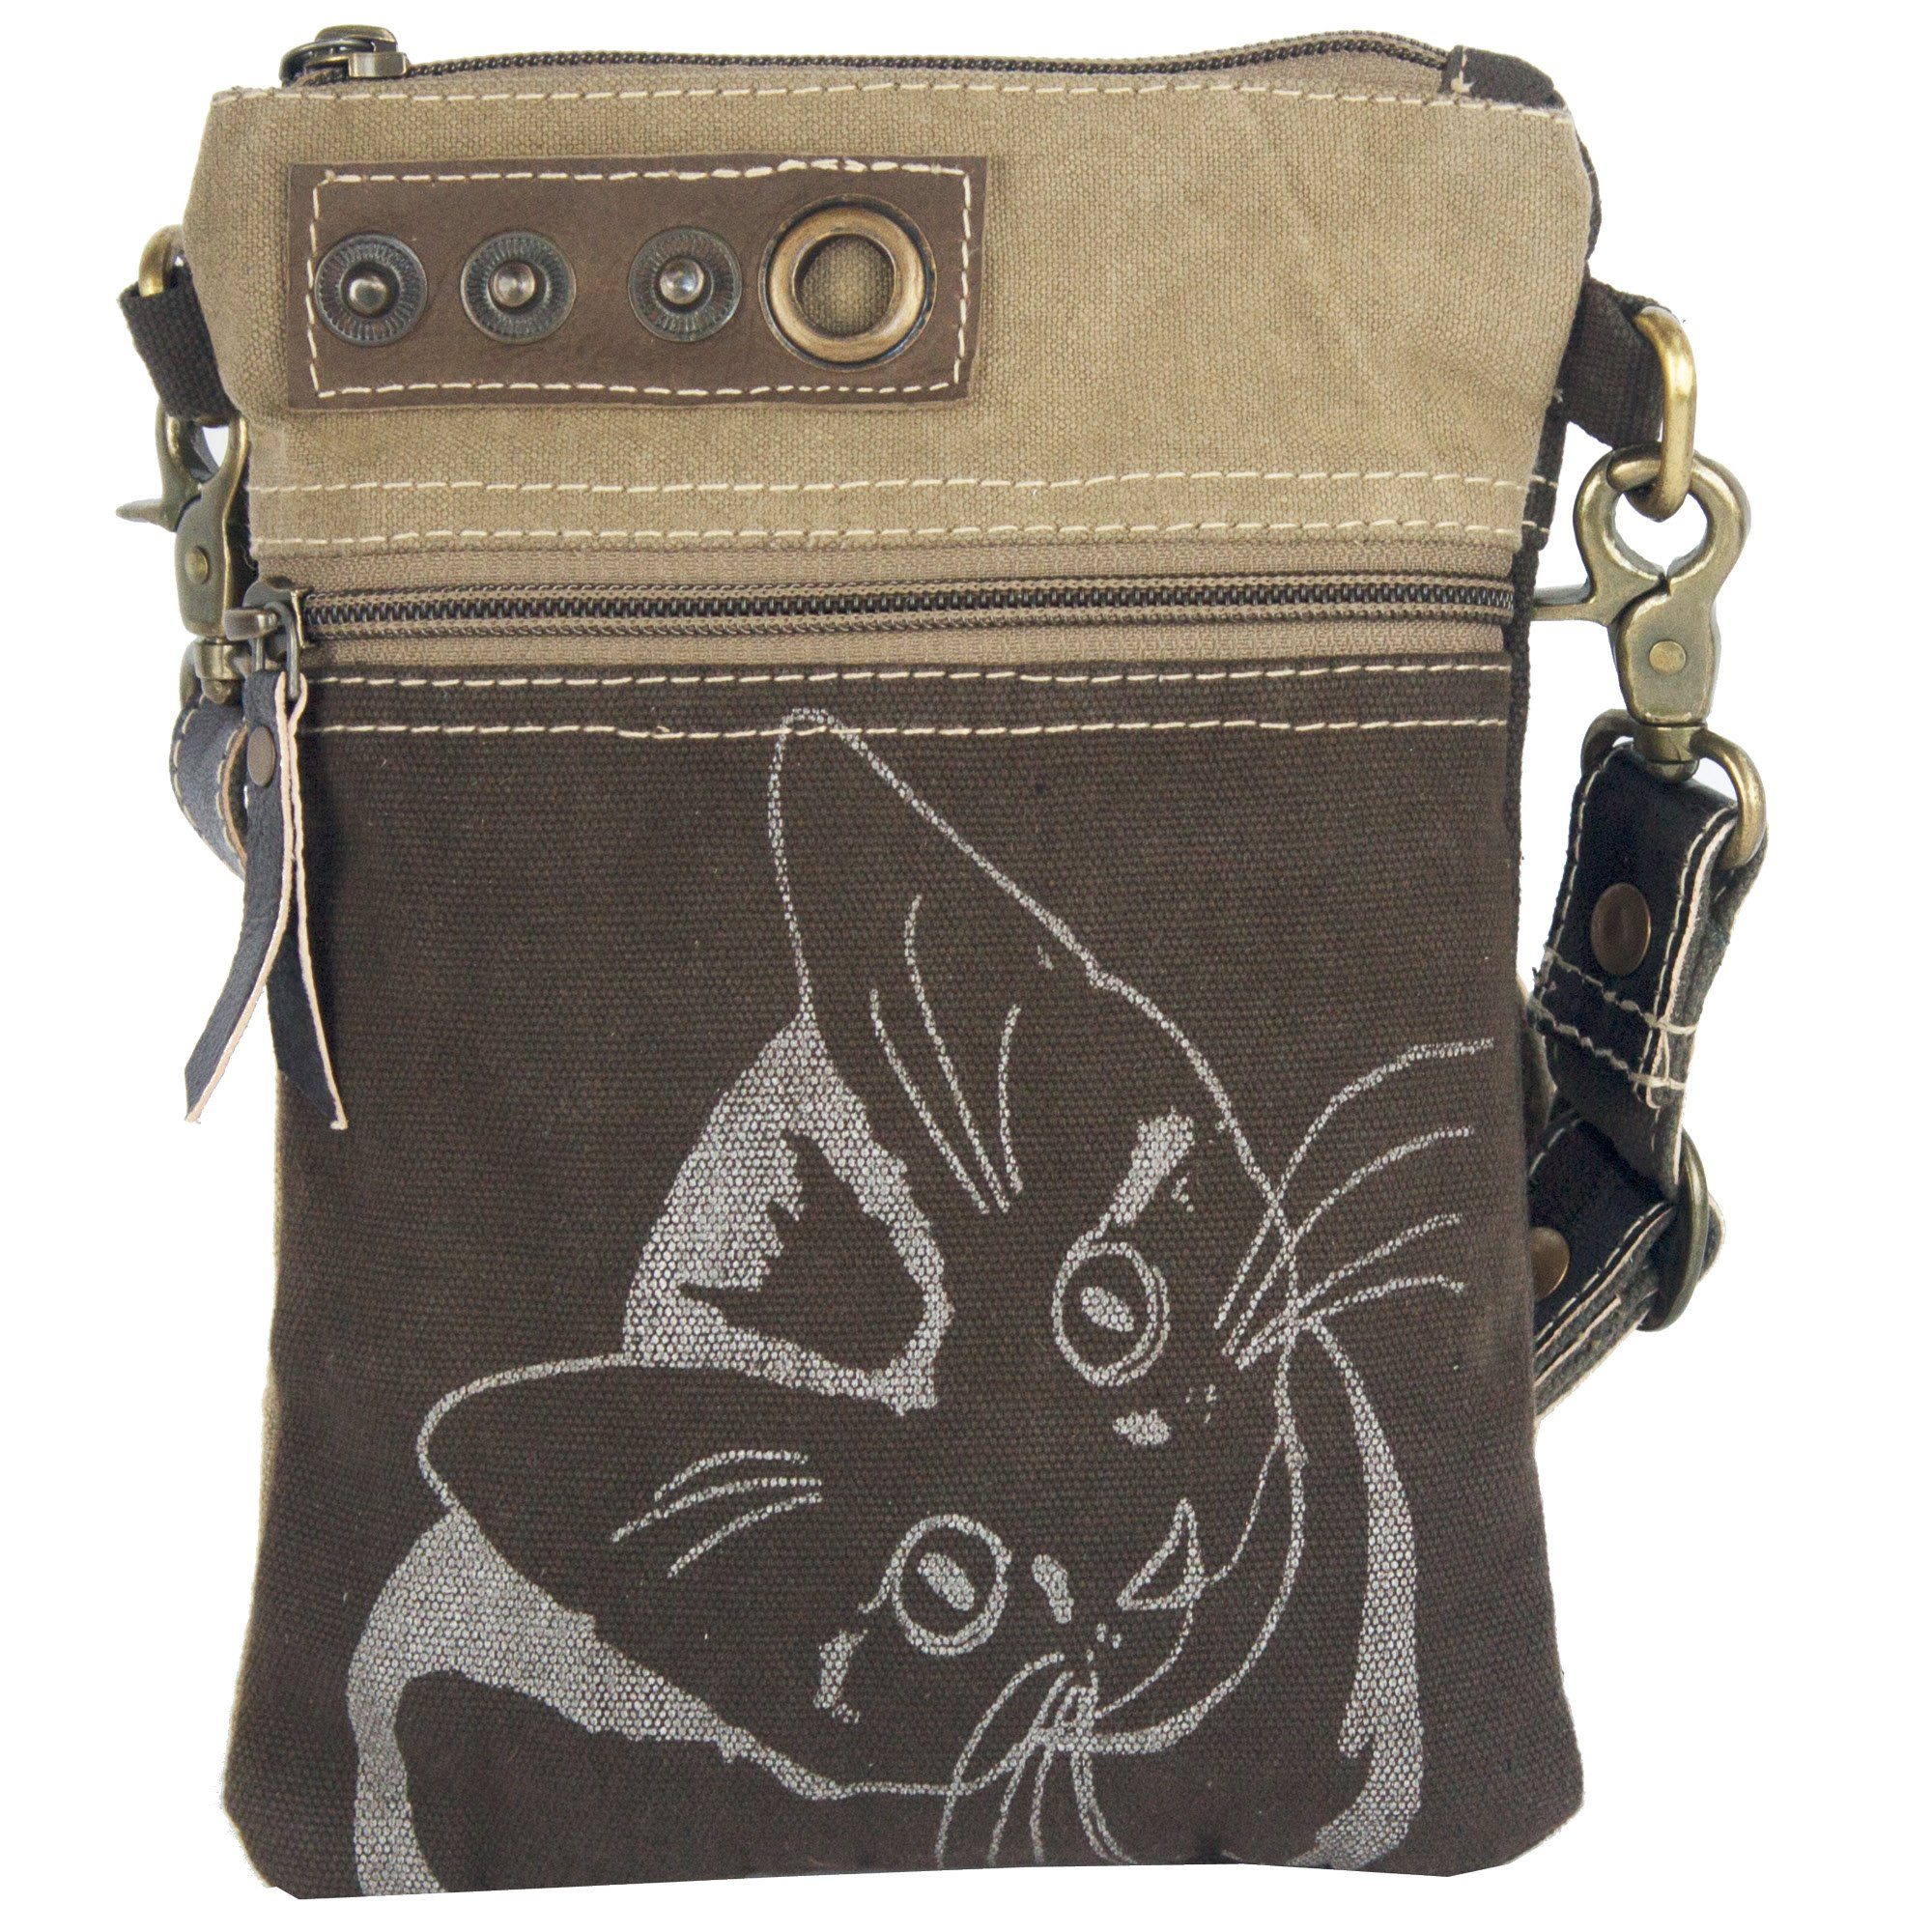 Sunsa Umhängetasche Katzenmotiv Tasche, Kleien Umhängetasche aus Canvas. braune Crossbody bag für Katzenliebhaber. 52495, aus recyceltem Canvas